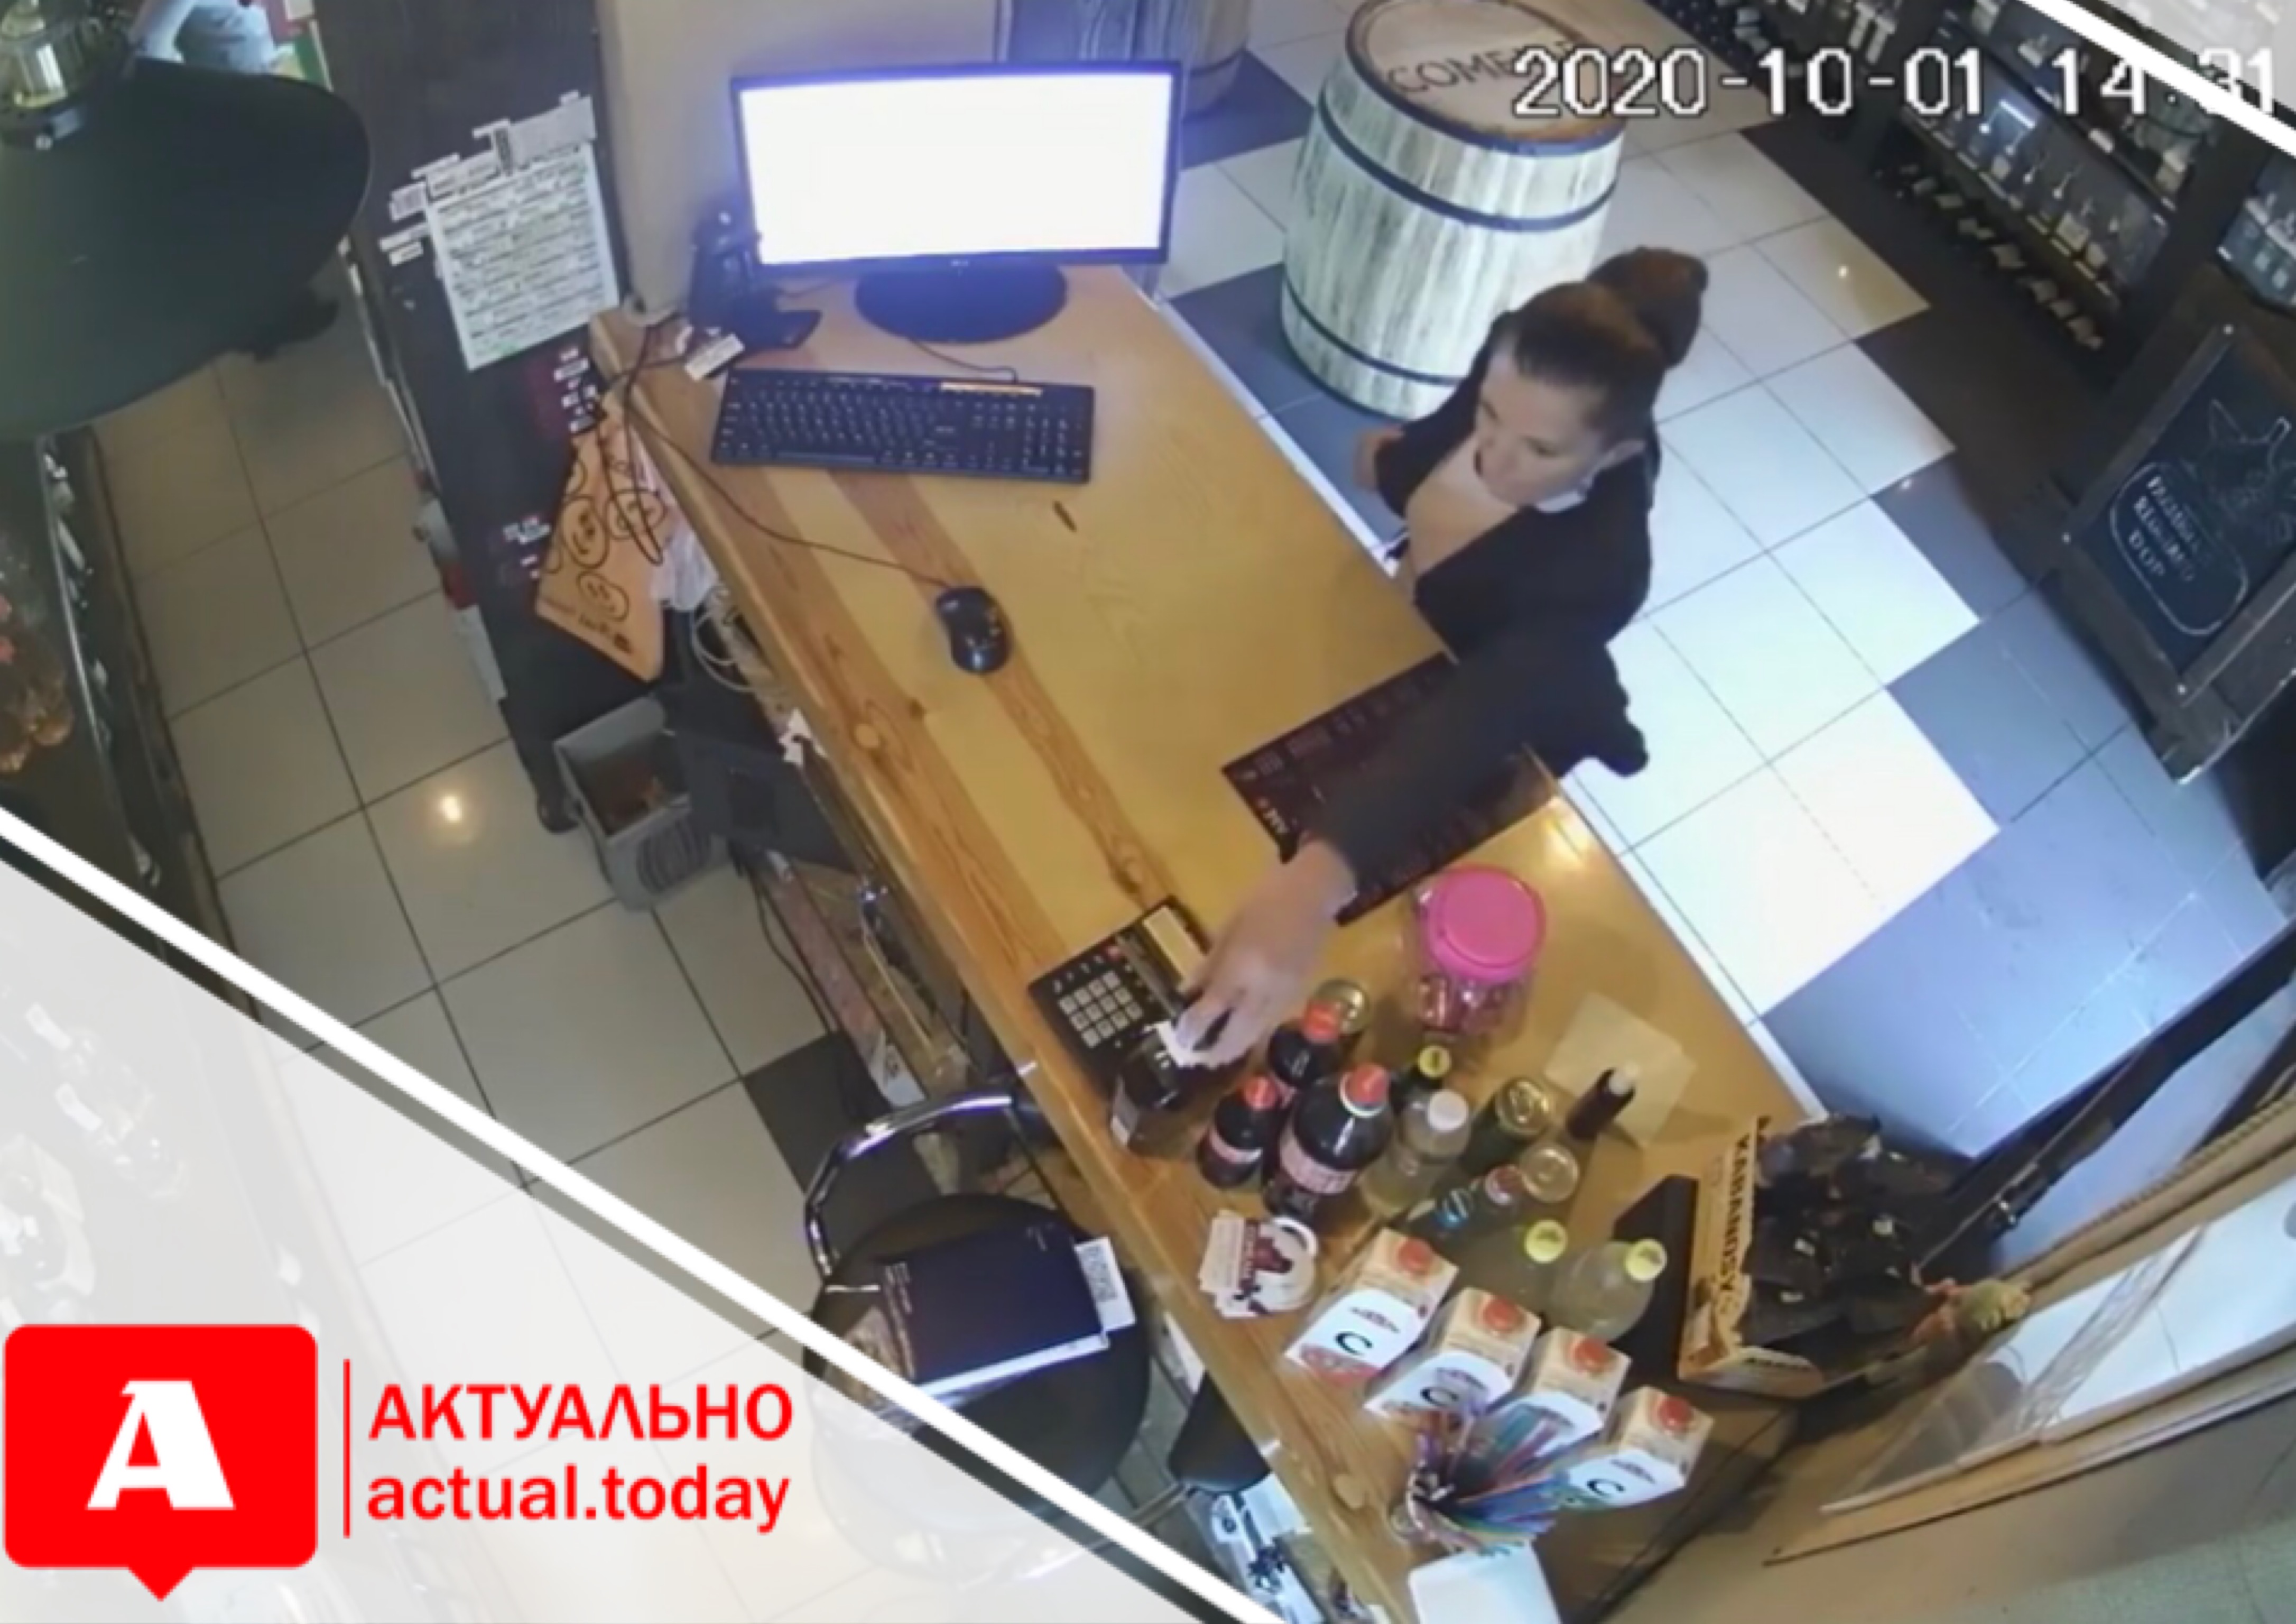 В Бердянске женщина украла бутылку виски и попала на камеру видеонаблюдения (ВИДЕО)